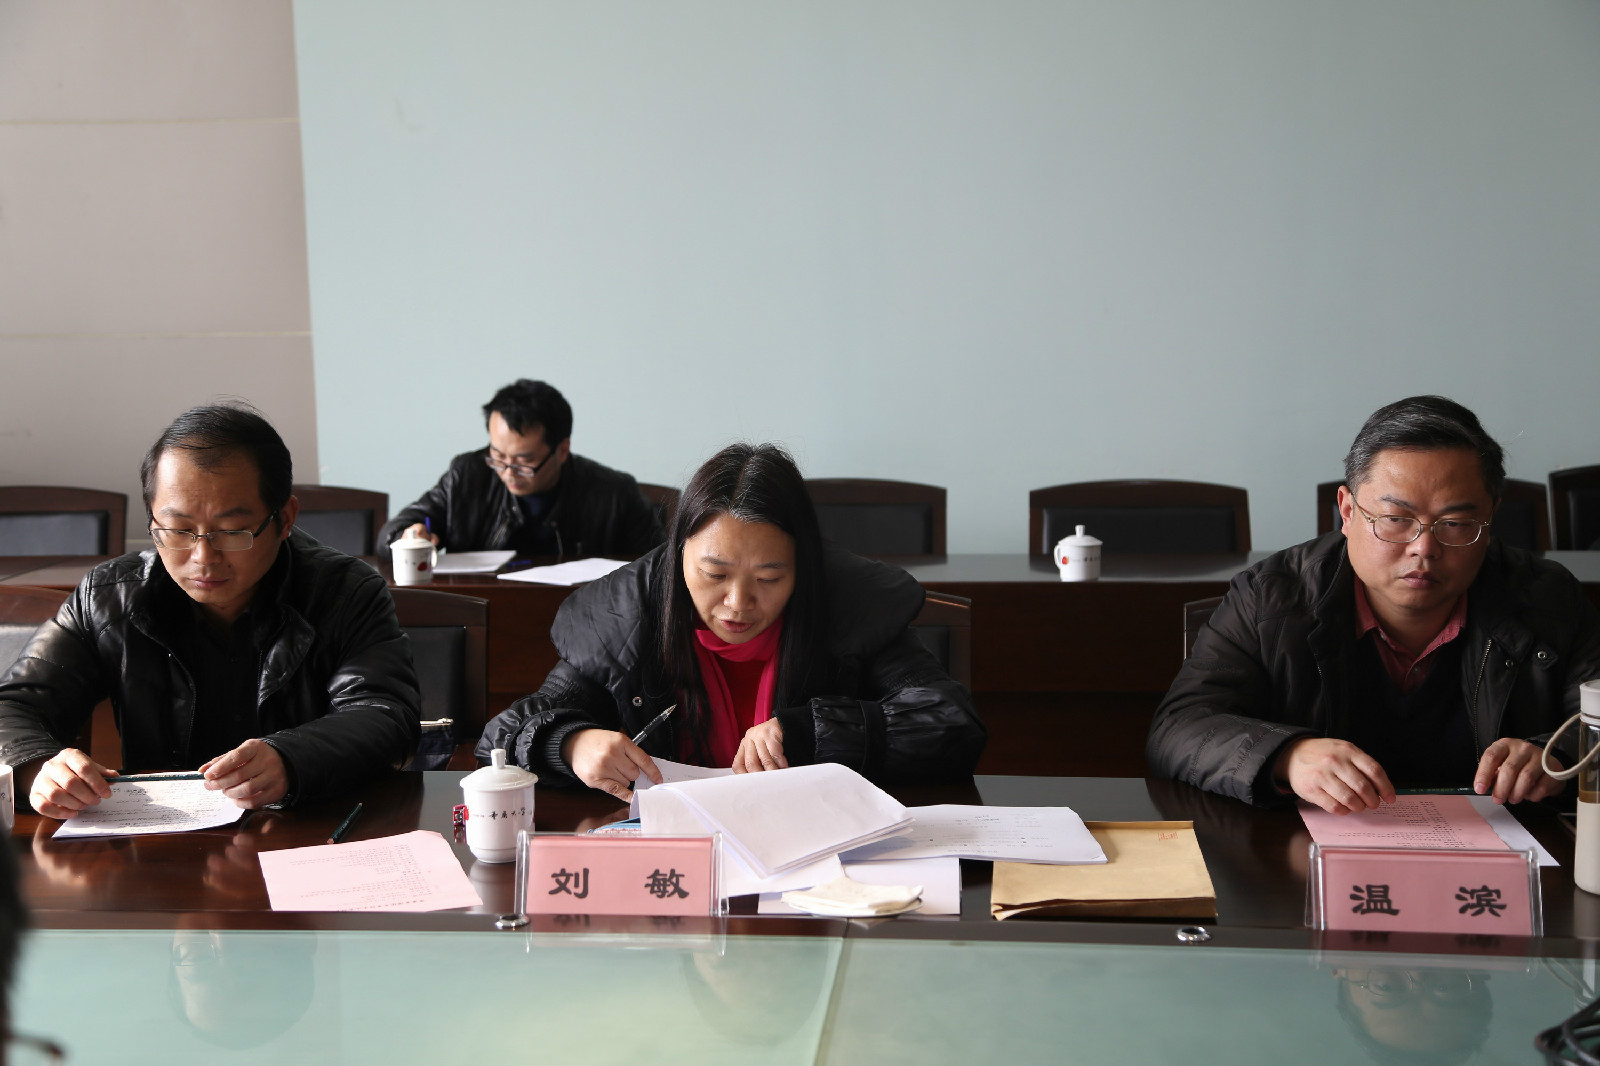 重庆大学通过国军标质量管理体系监督审核